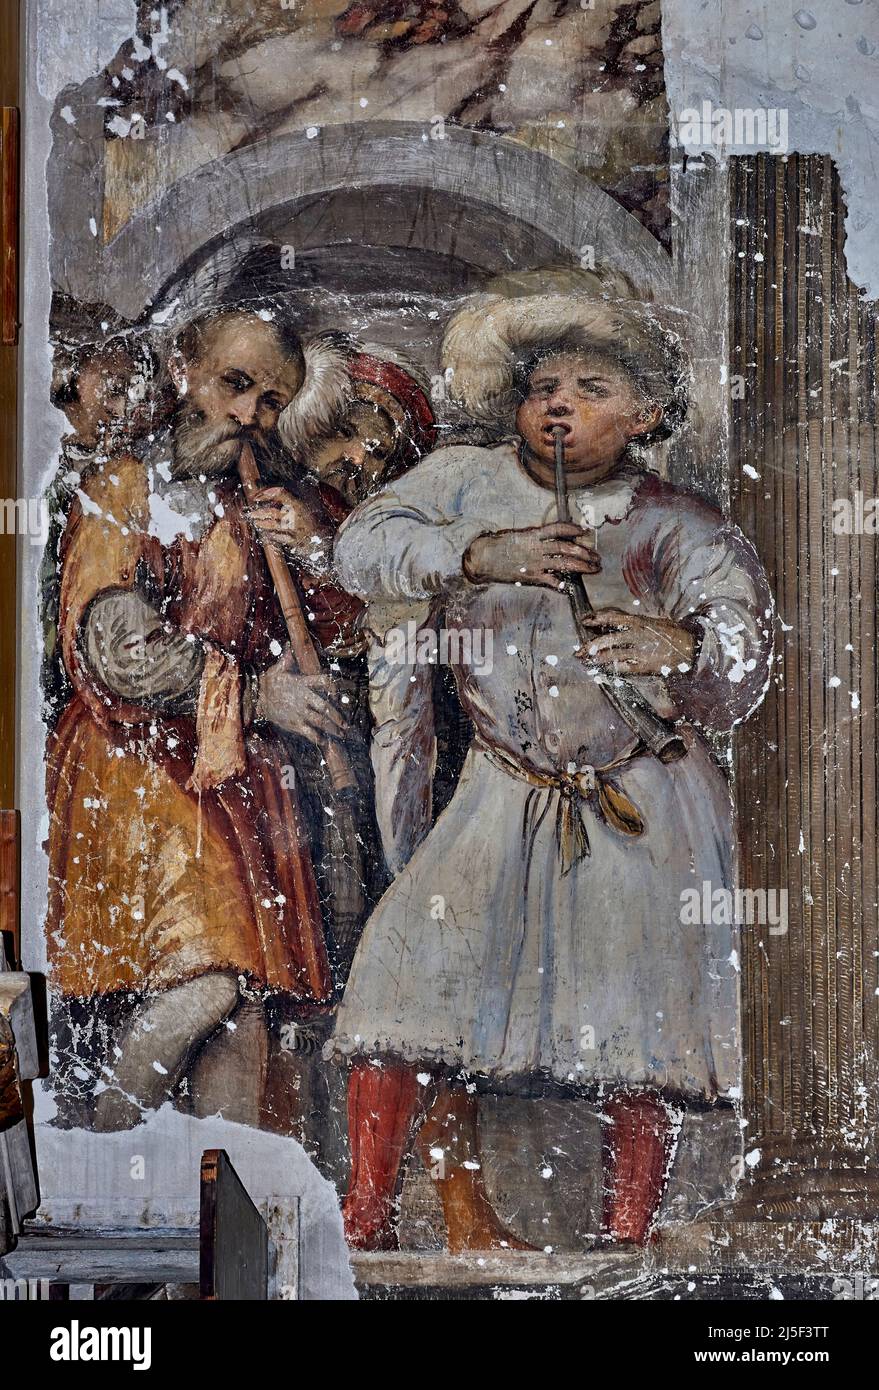 Corteo di musicanti - affresco - Girolamo Romanino - XVI secolo - Brescia, Italia, Duomo vecchio Stockfoto